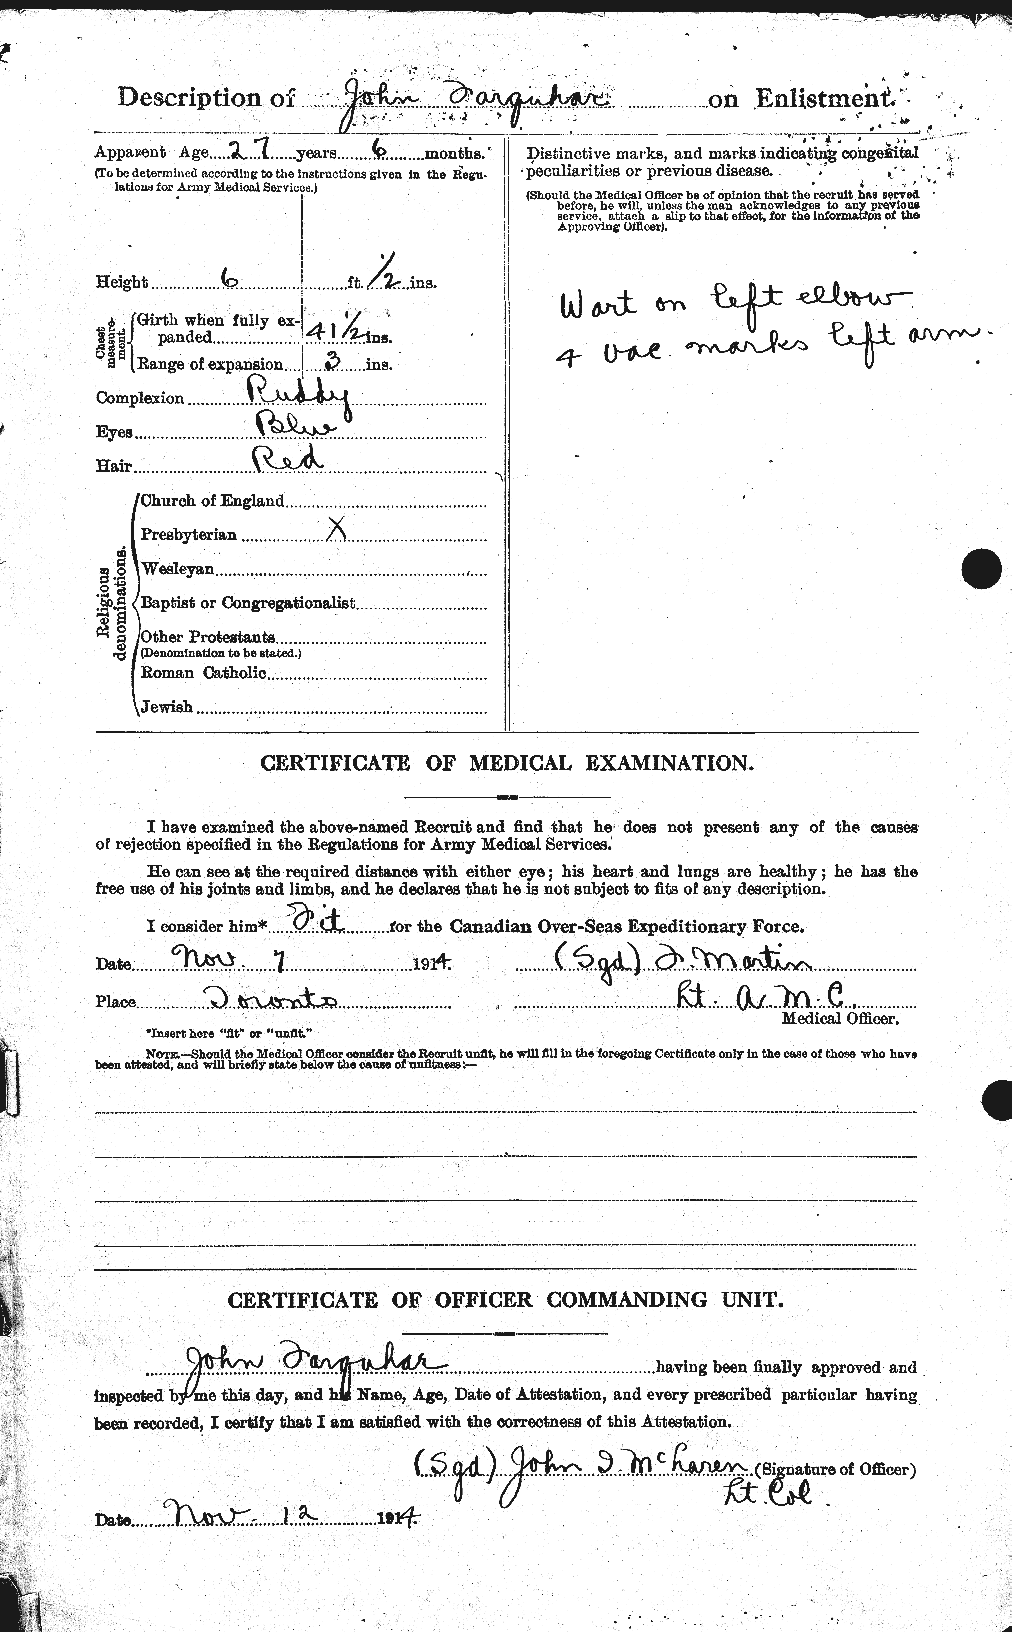 Dossiers du Personnel de la Première Guerre mondiale - CEC 318778b